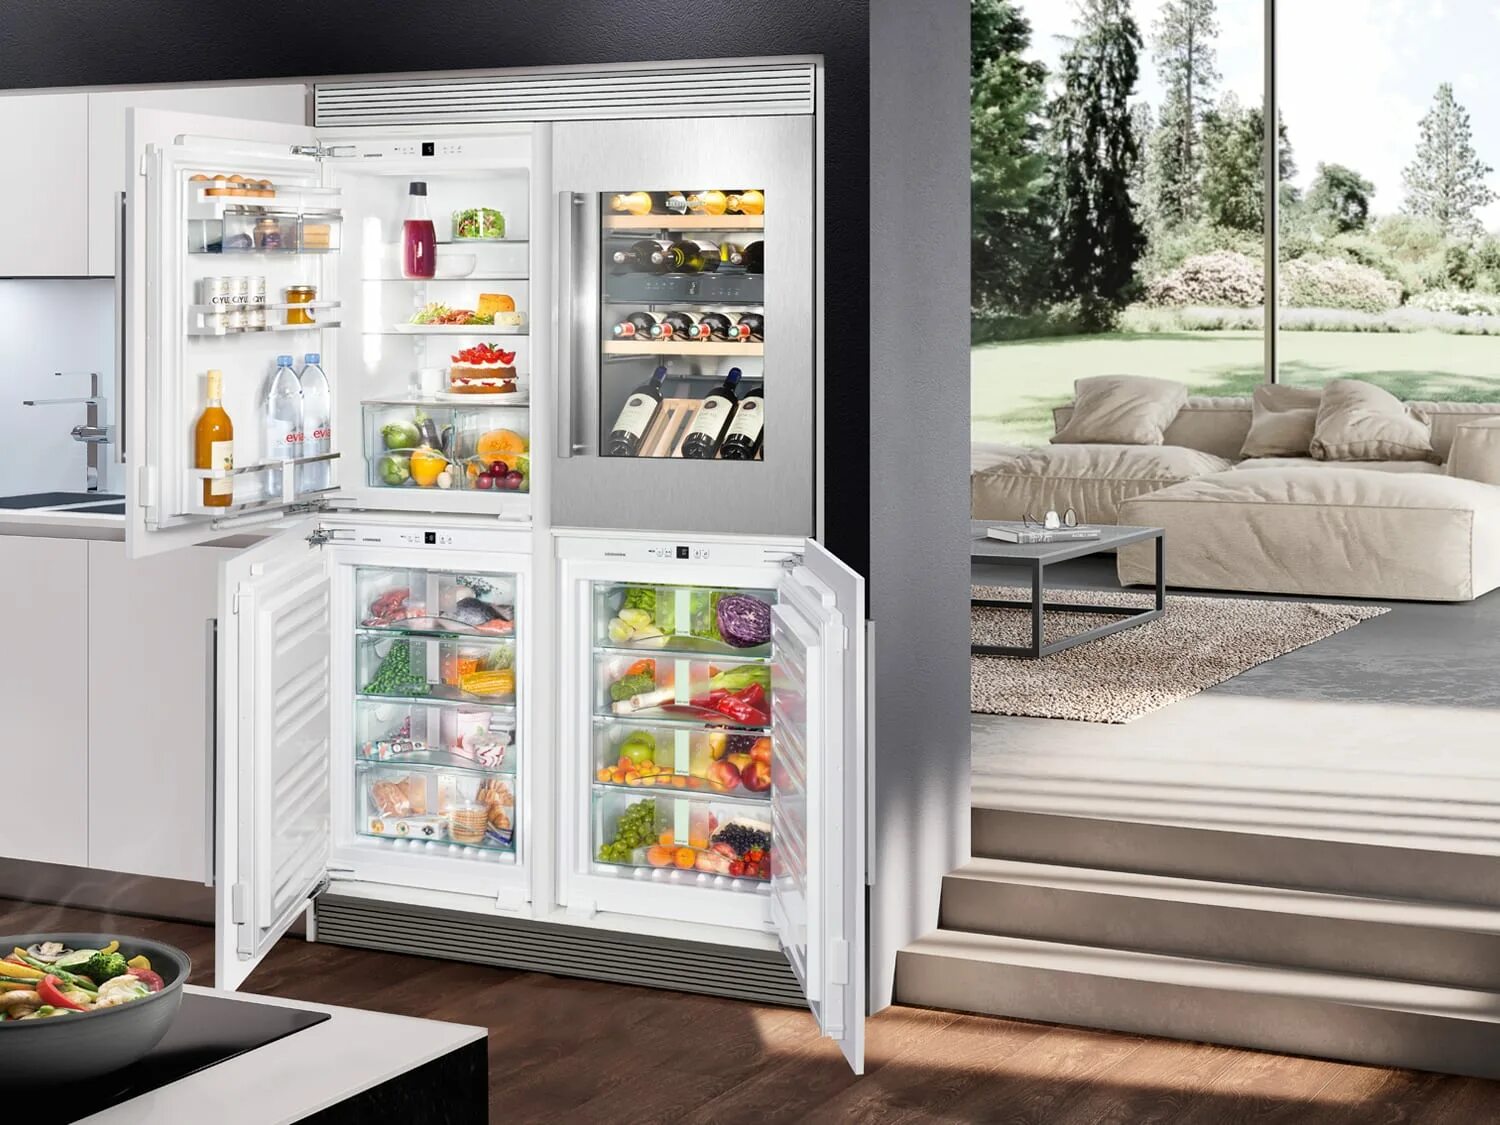 Холодильник Либхер двухдверный. Холодильник Liebherr Side by Side. Холодильник Либхер с винным шкафом. Встраиваемый холодильник Liebherr с зоной свежести. Какие холодильники лучше по качеству